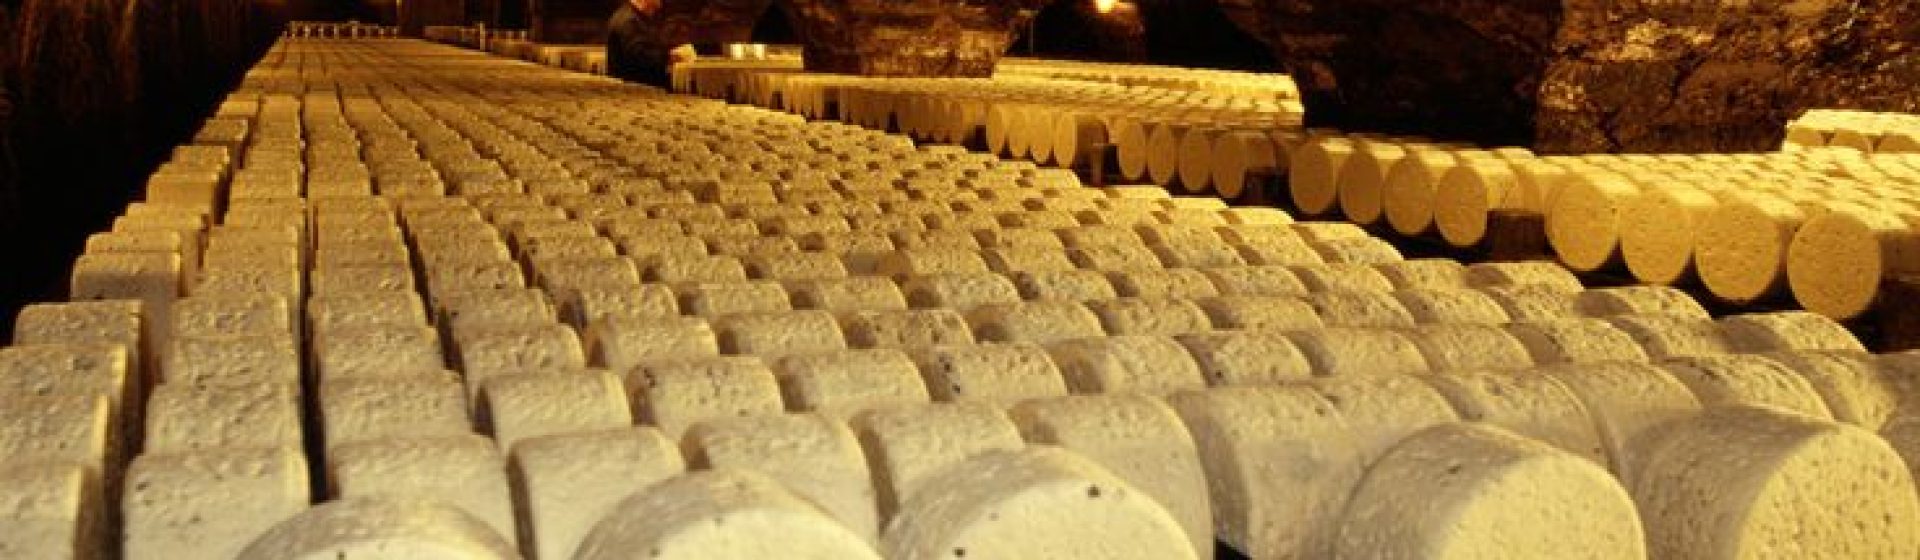 Service de fromagerie à Béziers – Le Cantalou